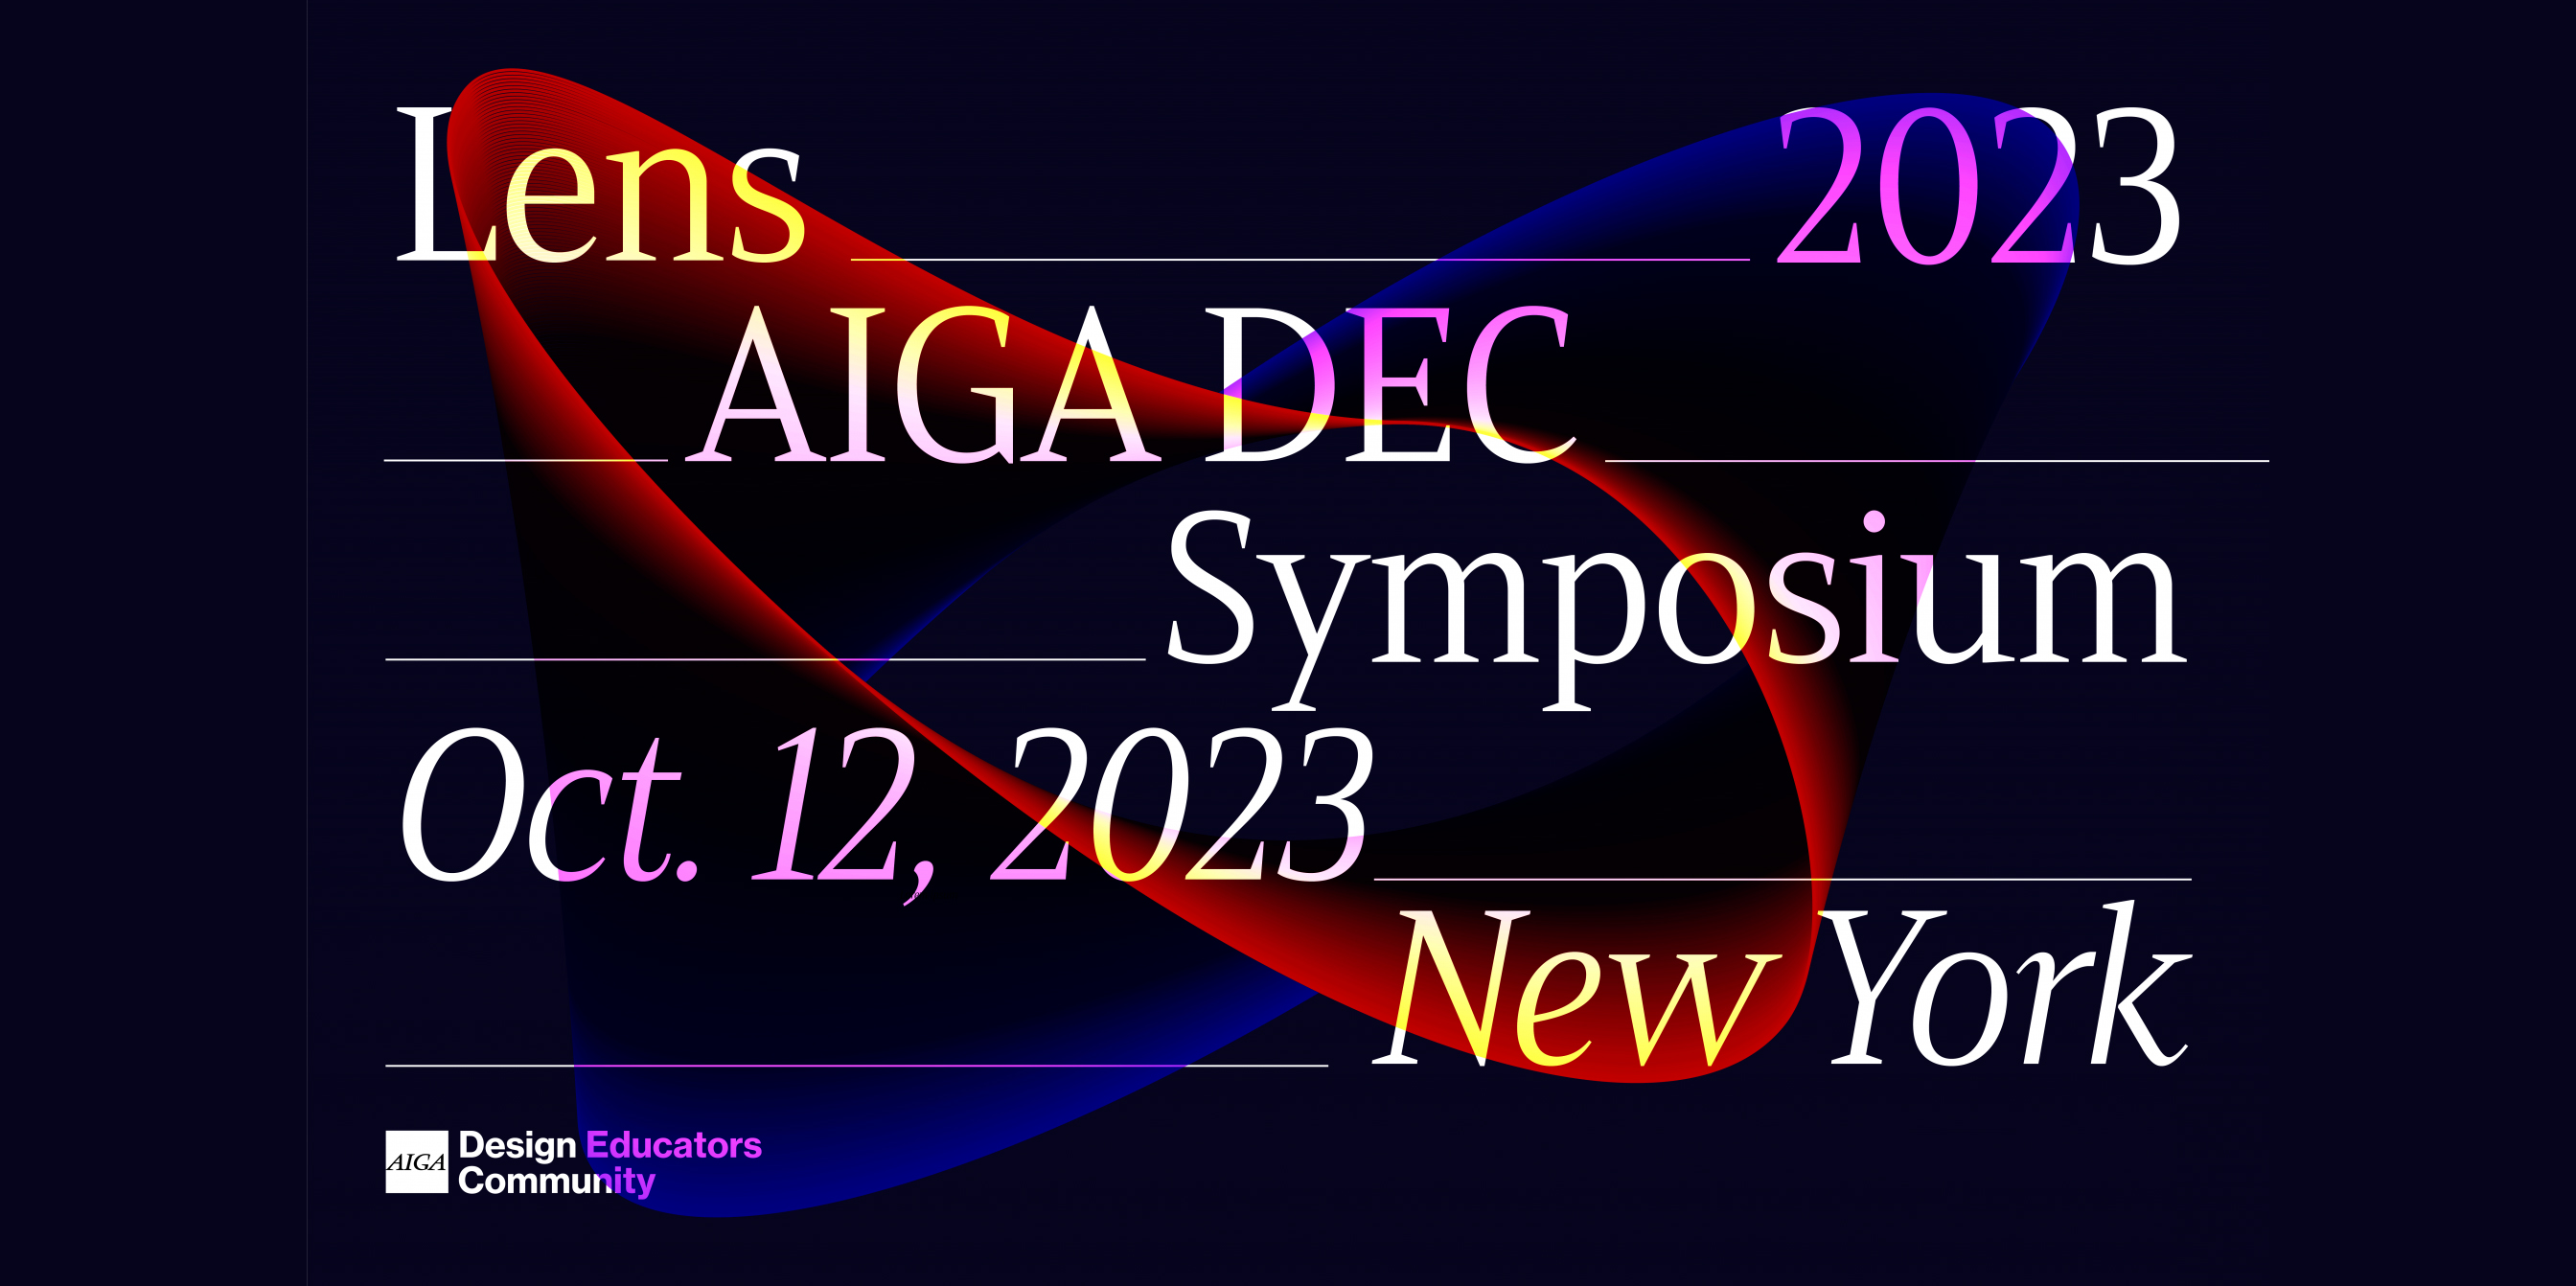 Banner of the AIGA DEC Lens Symposium 2023